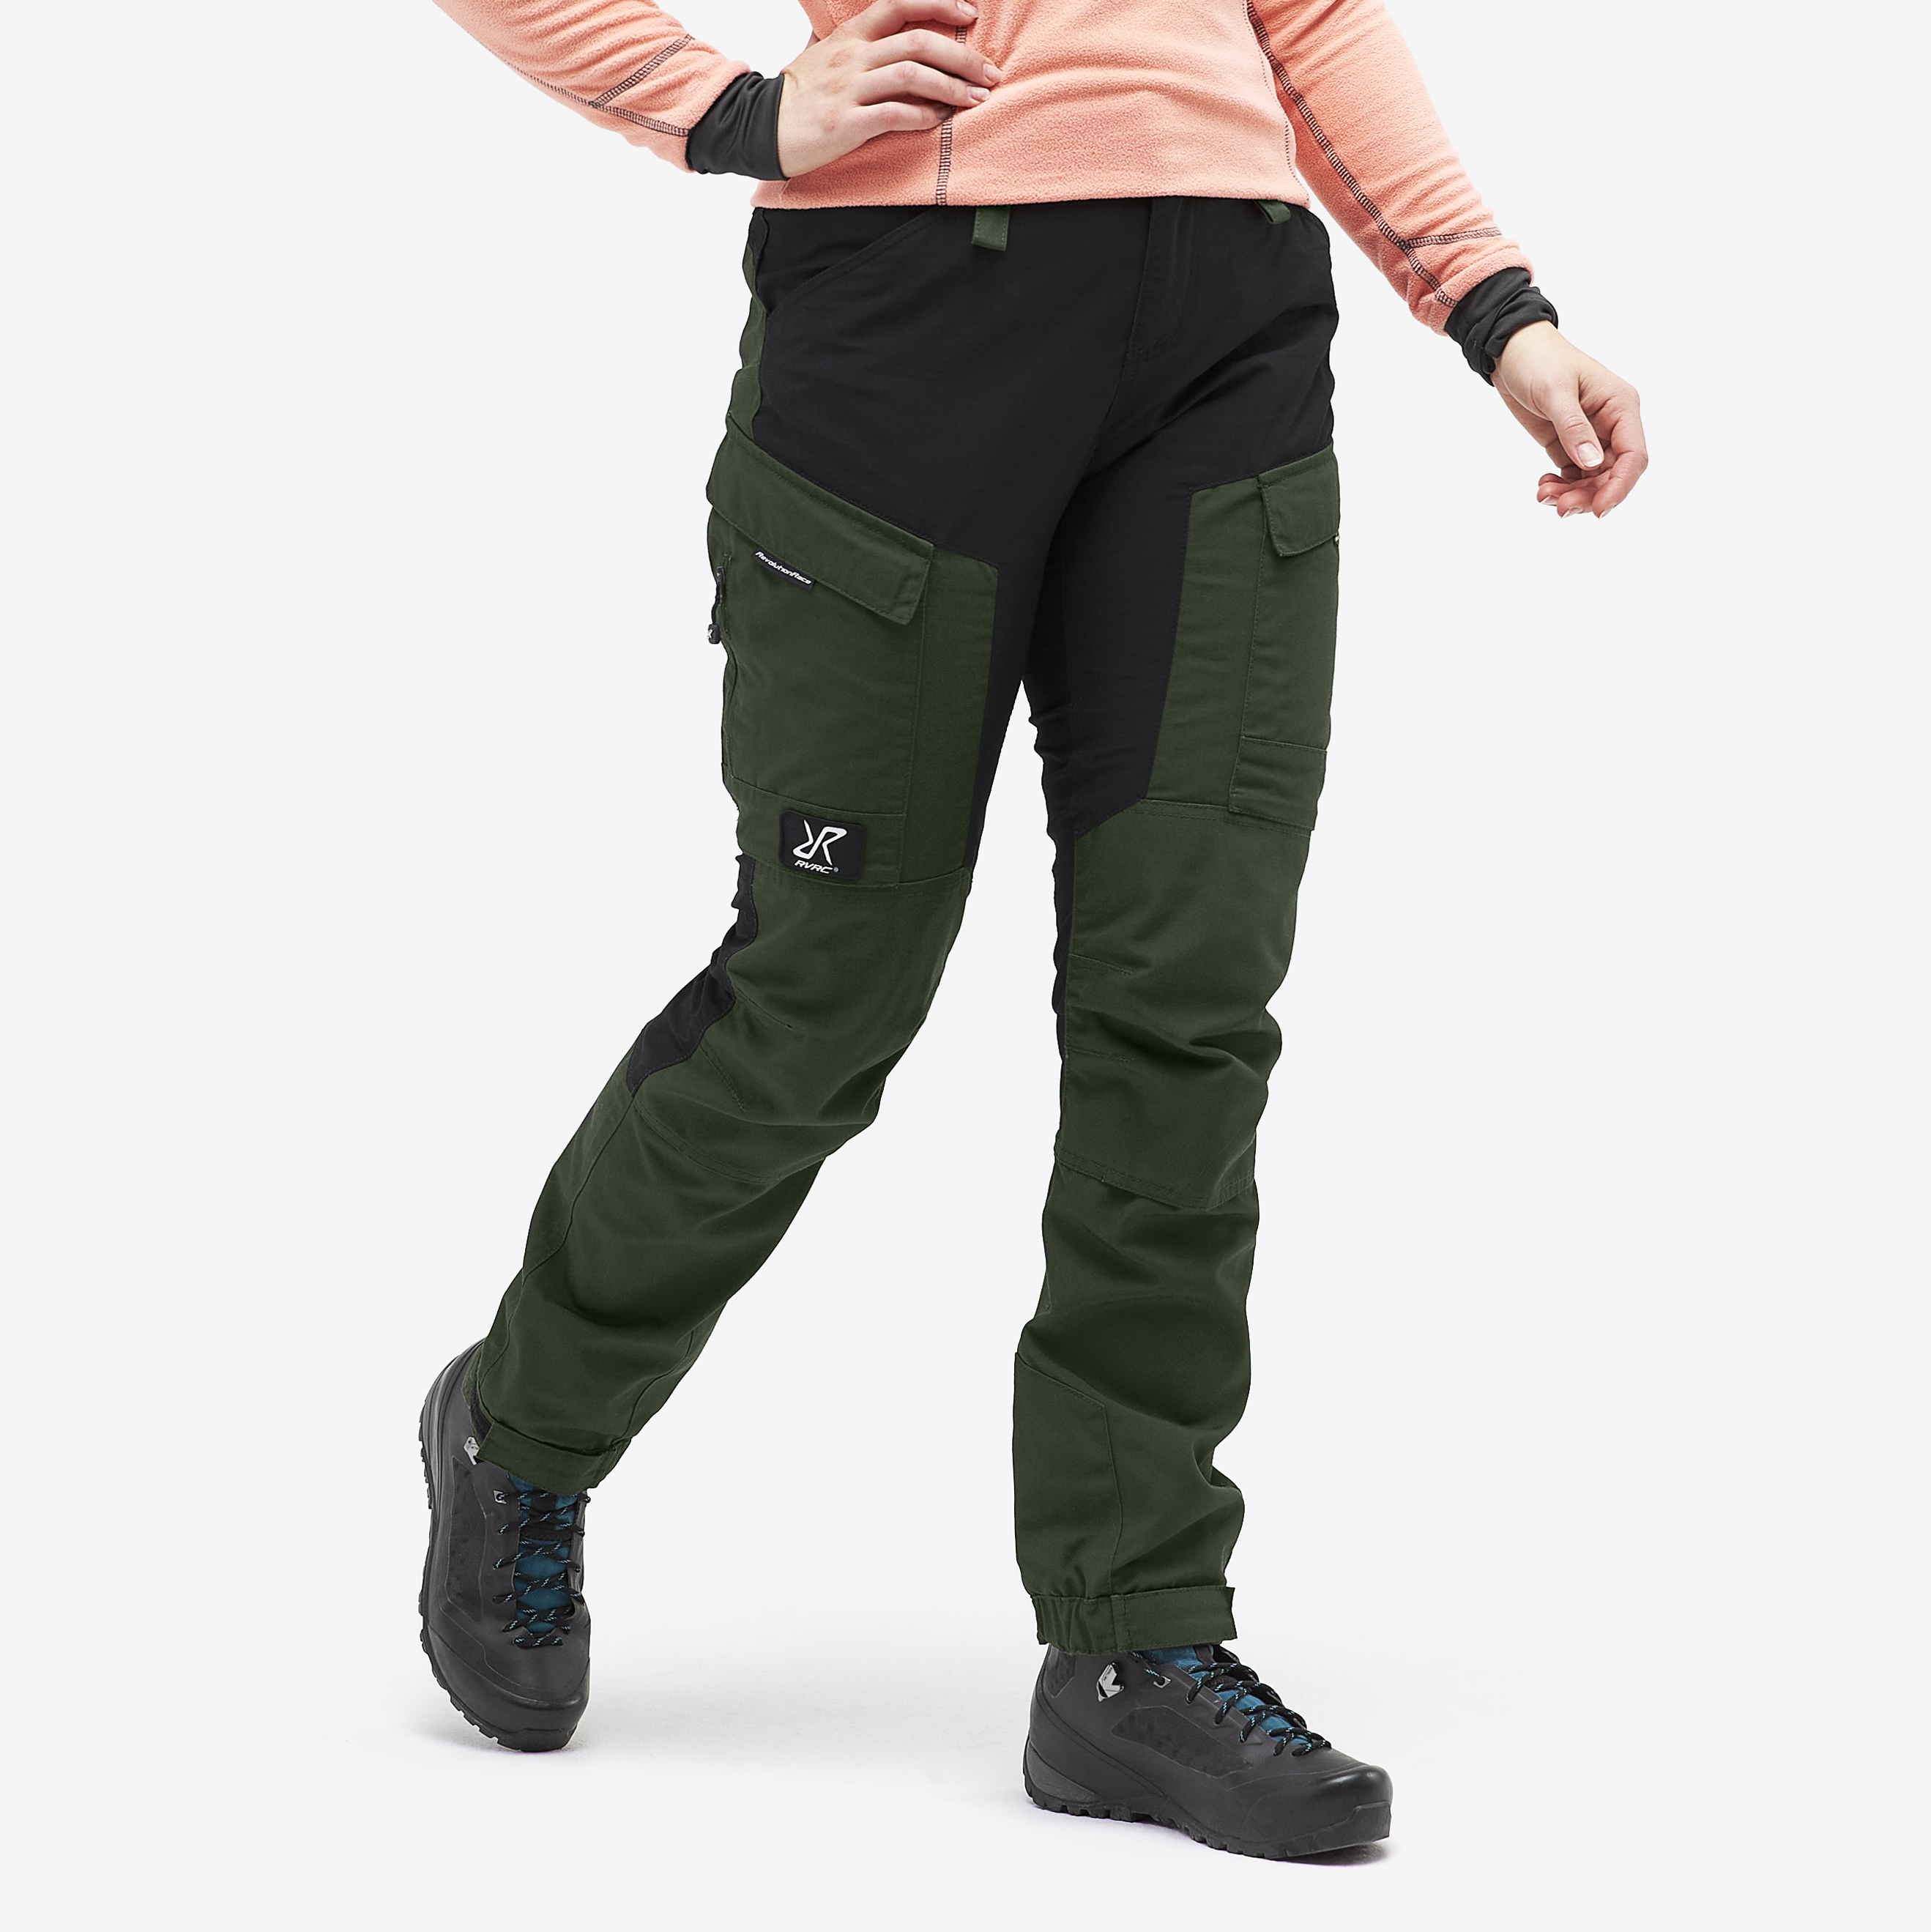 RVRC GP Short outdoor broek voor dames in groen